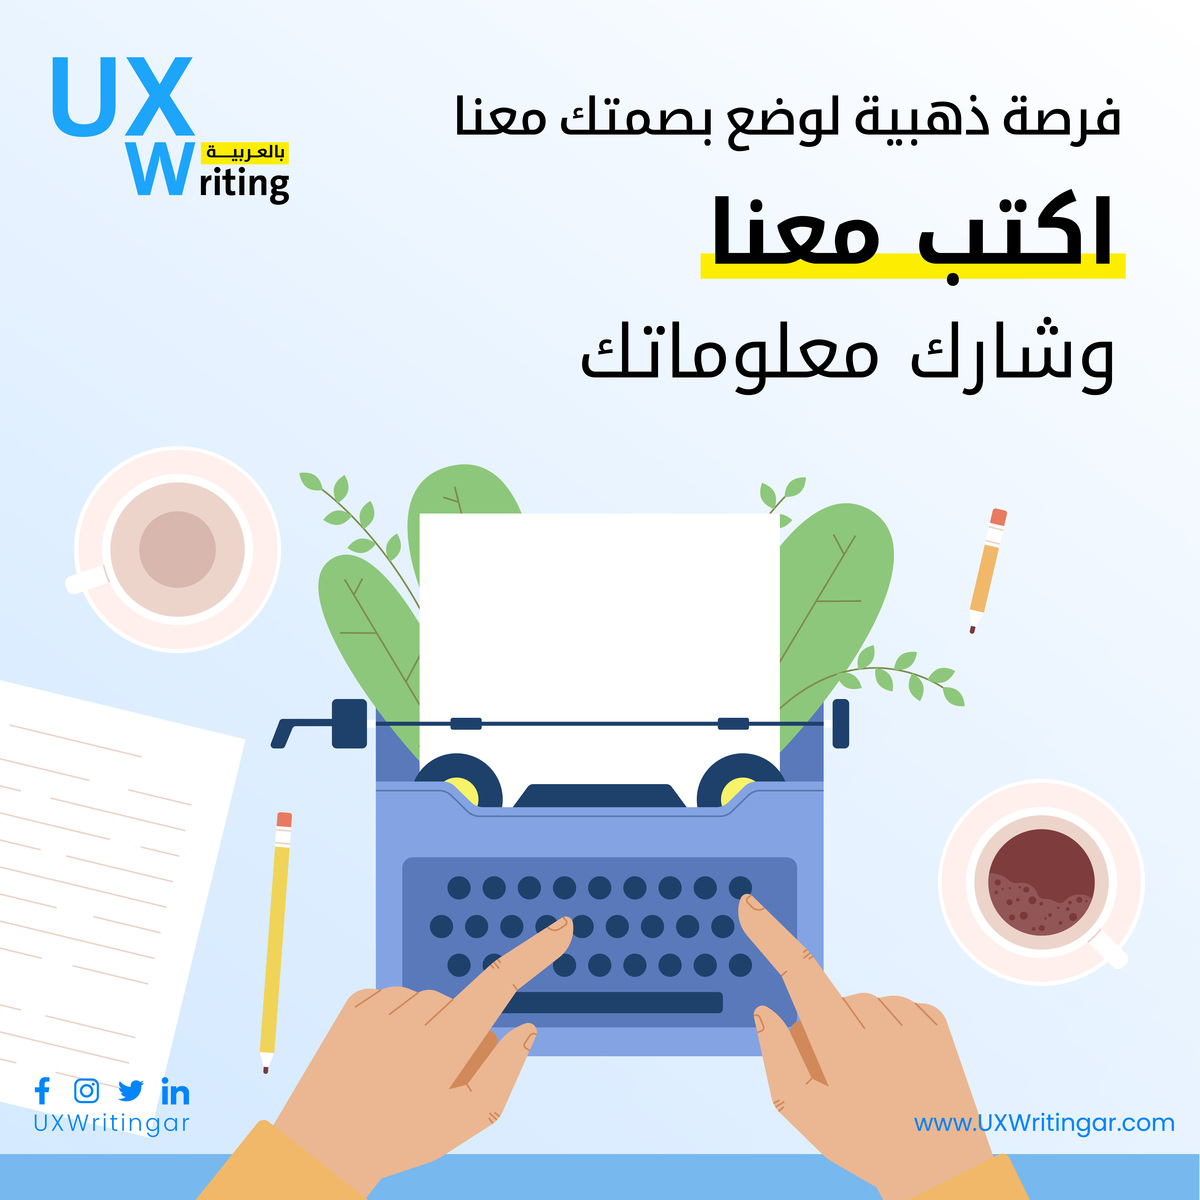 هل أنت متحمس للكتابة؟ 💻
هل واجهت تجارب مثيرة أو معلومات قيّمة في كتابة تجربة المستخدم ترغب في مشاركتها مع العالم؟ 

🚀 إذا كنت كذلك، فنحن في انتظارك.

 انضم إلينا وشارك مواهبك من خلال الرابط التالي 👇 

uxwritingar.com/write-for-us

 #UXWriting #UX #ContentDesign